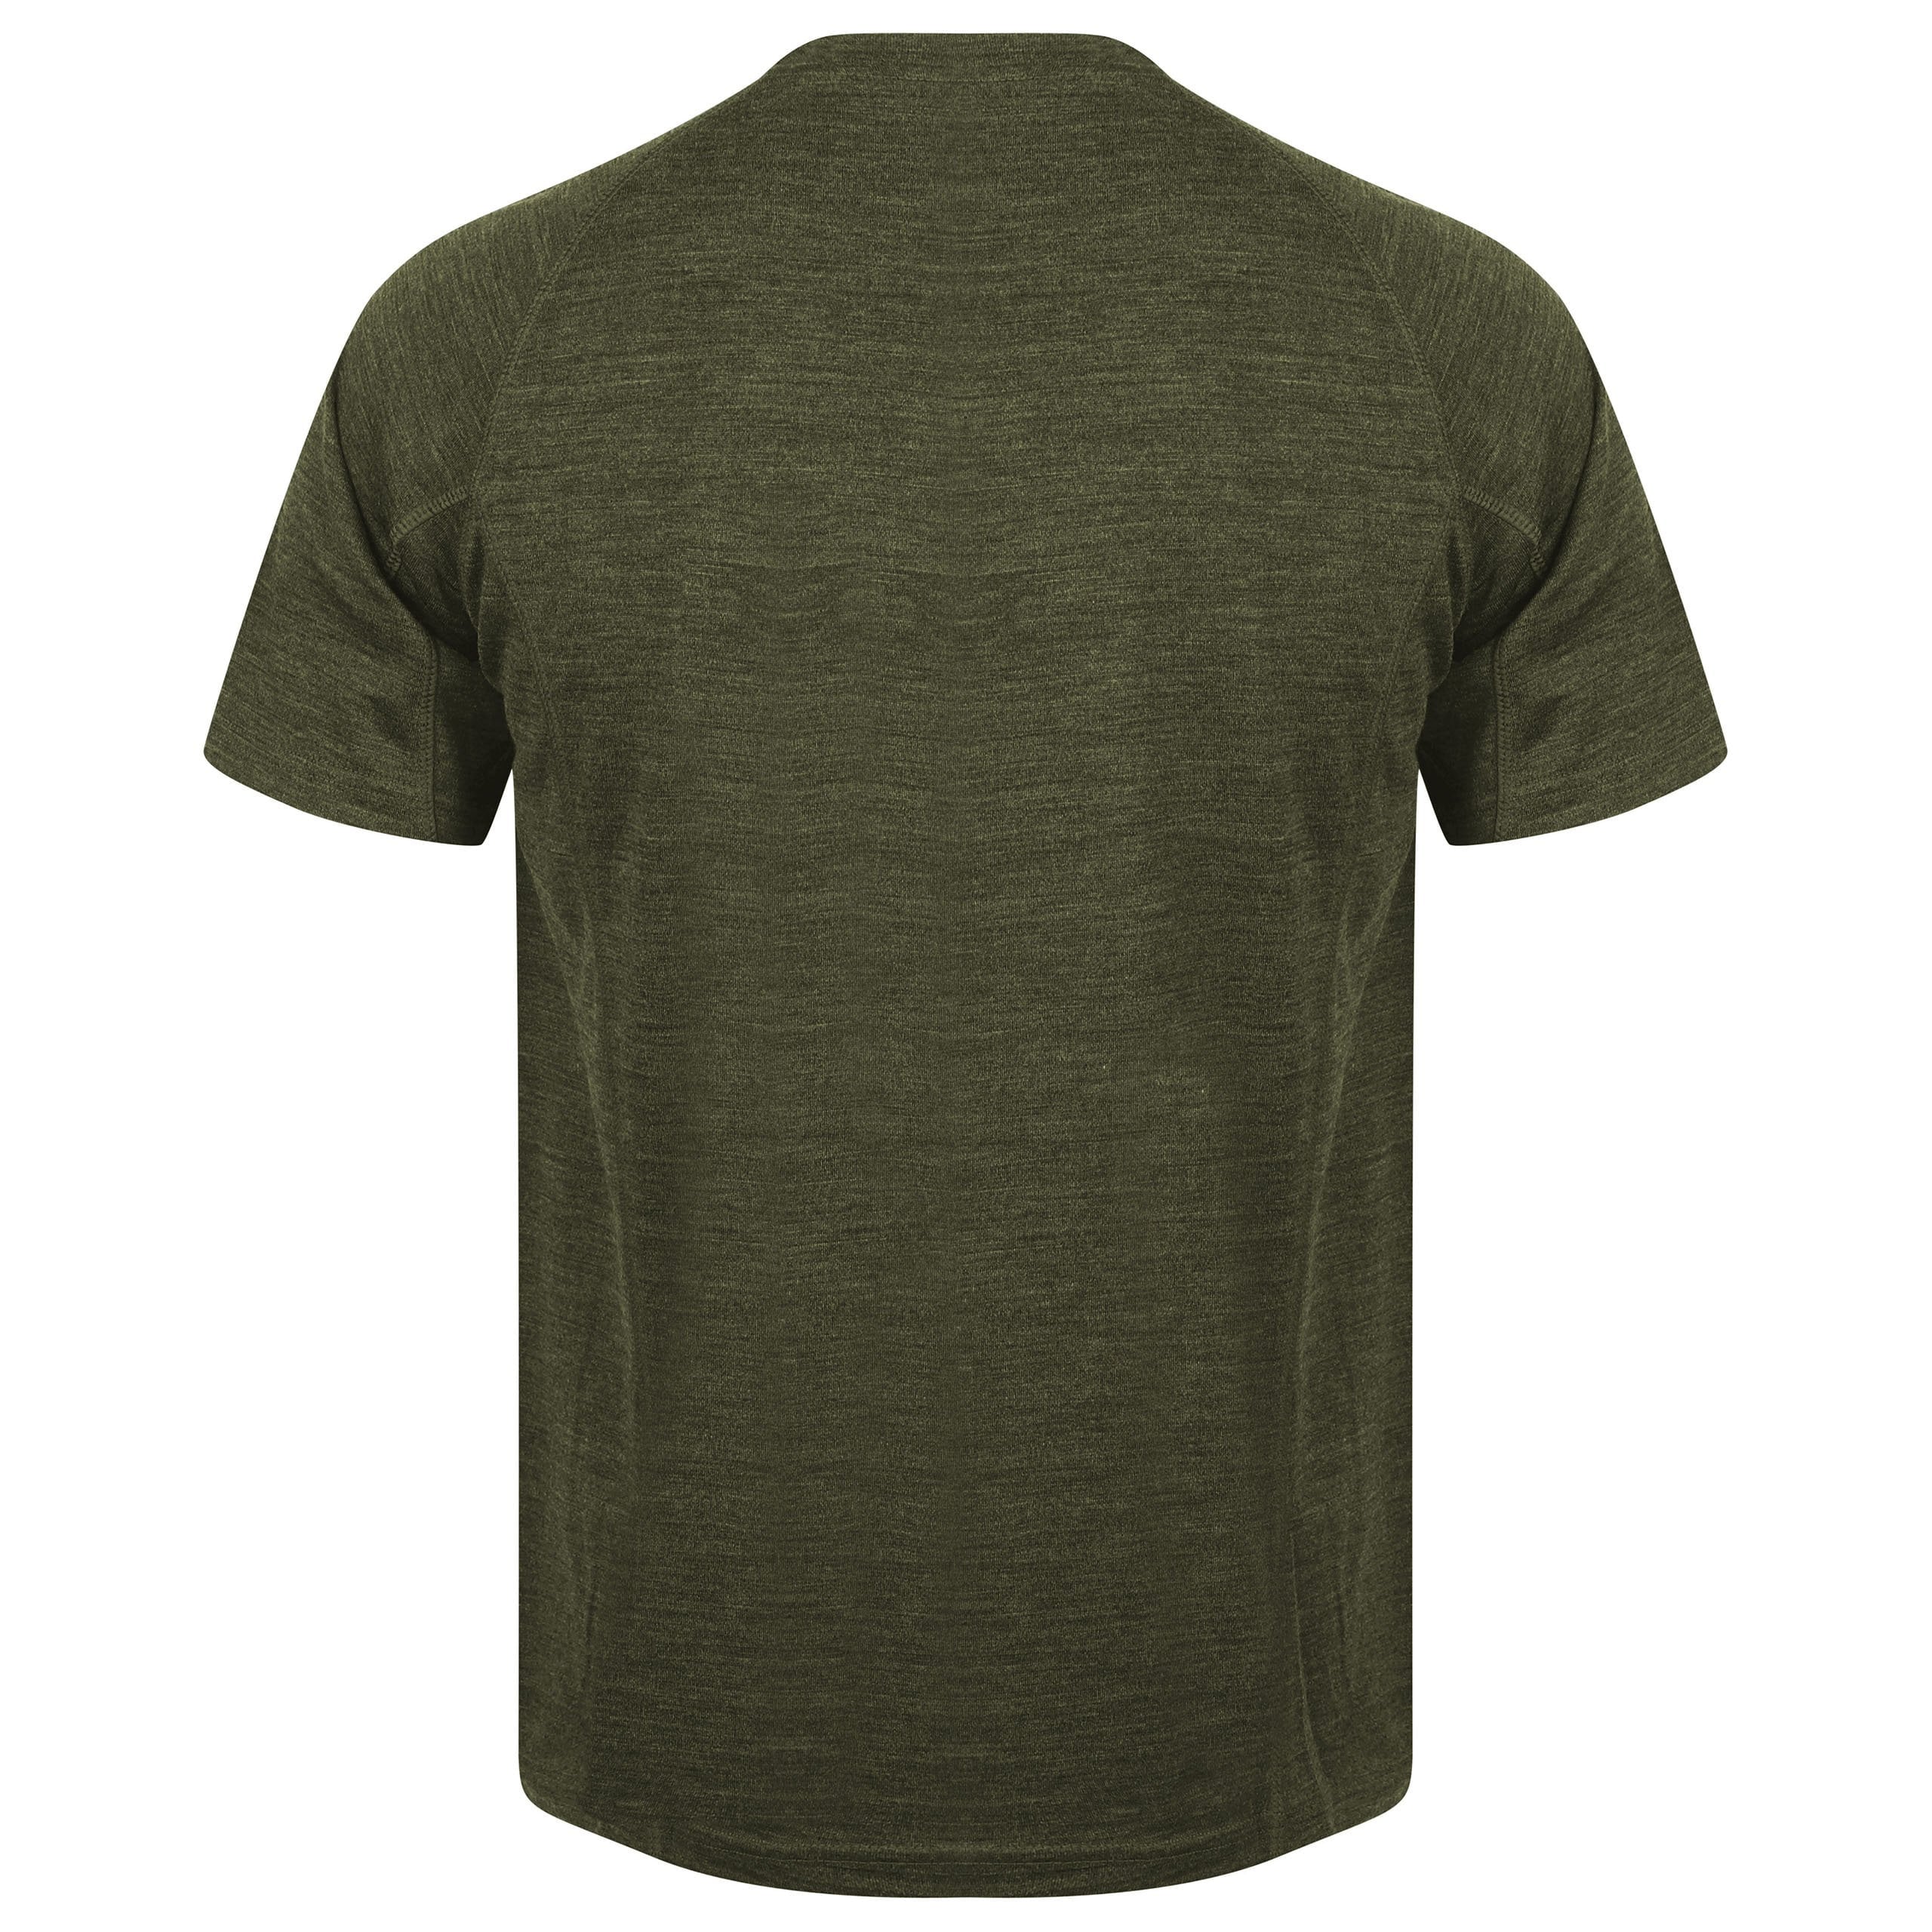 EDZ Merino Wool T-Shirt 200g Mens Olive Green